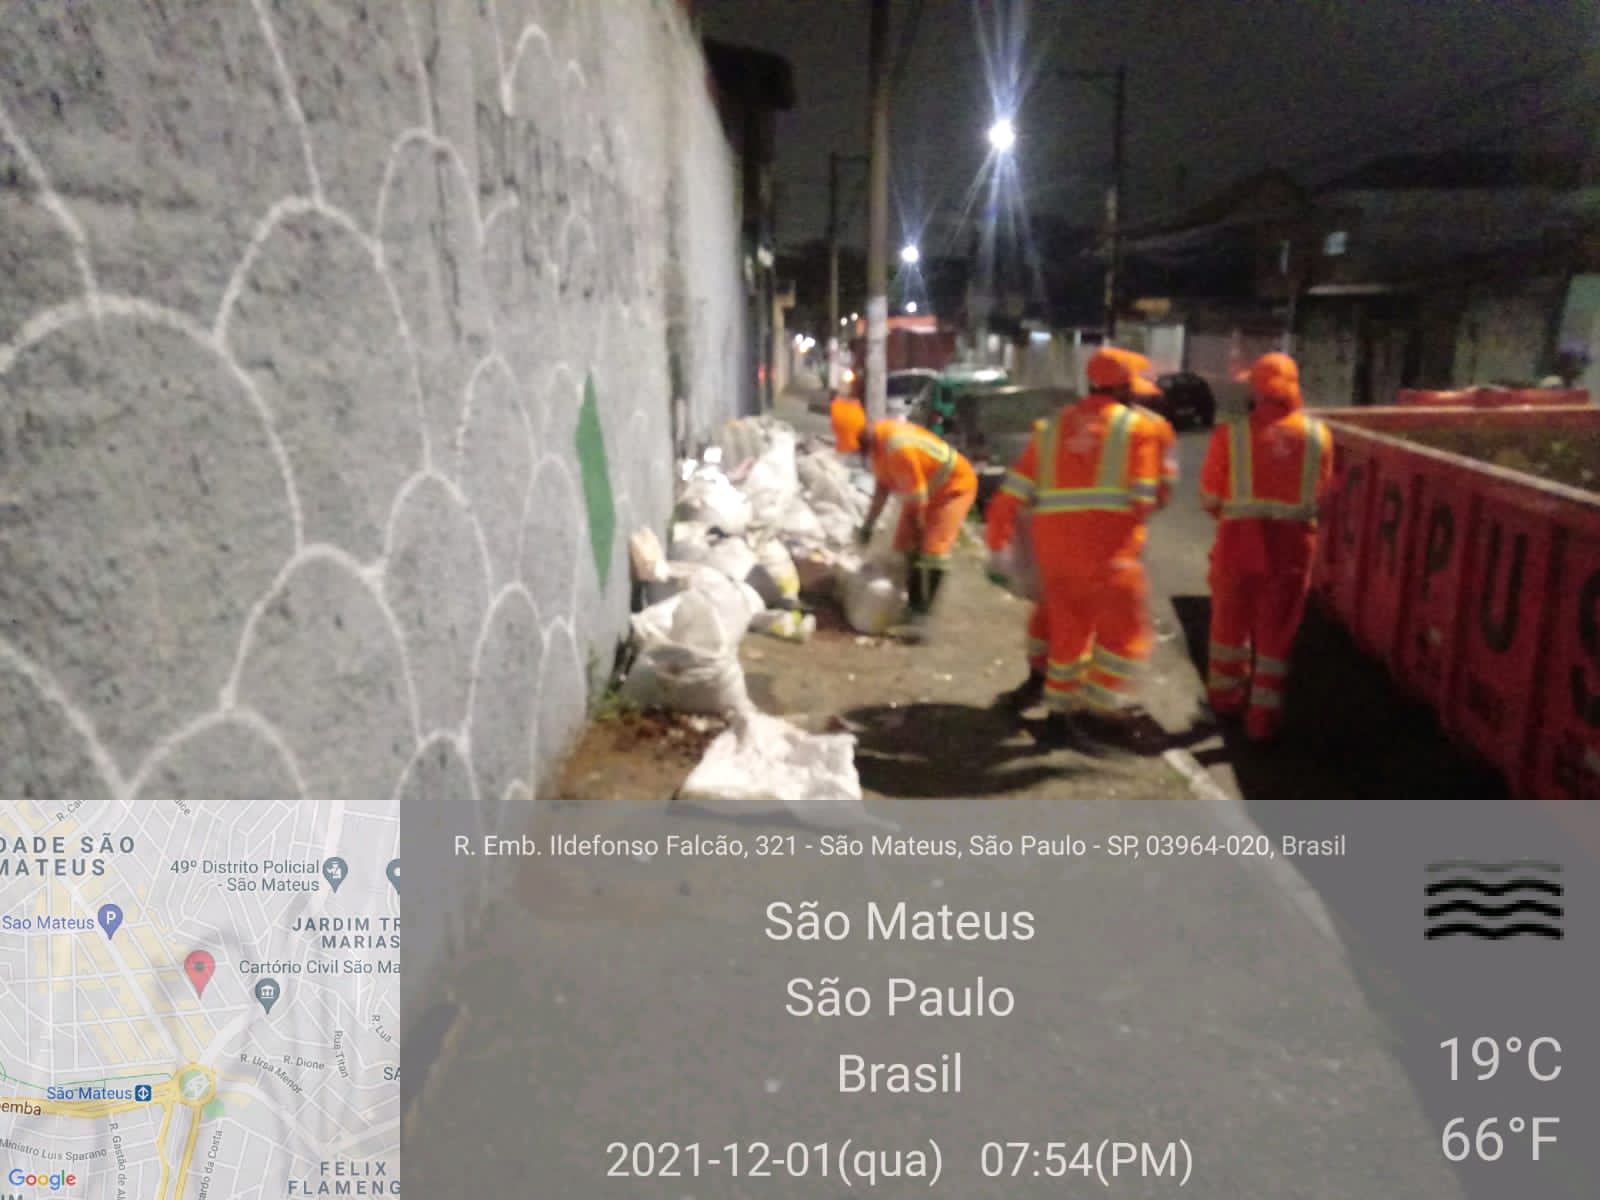 Funcionários municipais, com uniforme laranja, recolhem sacos de entulho espalhados pela calçada. Foto identificada como Rua Embaixador Ildefonso Falcão.